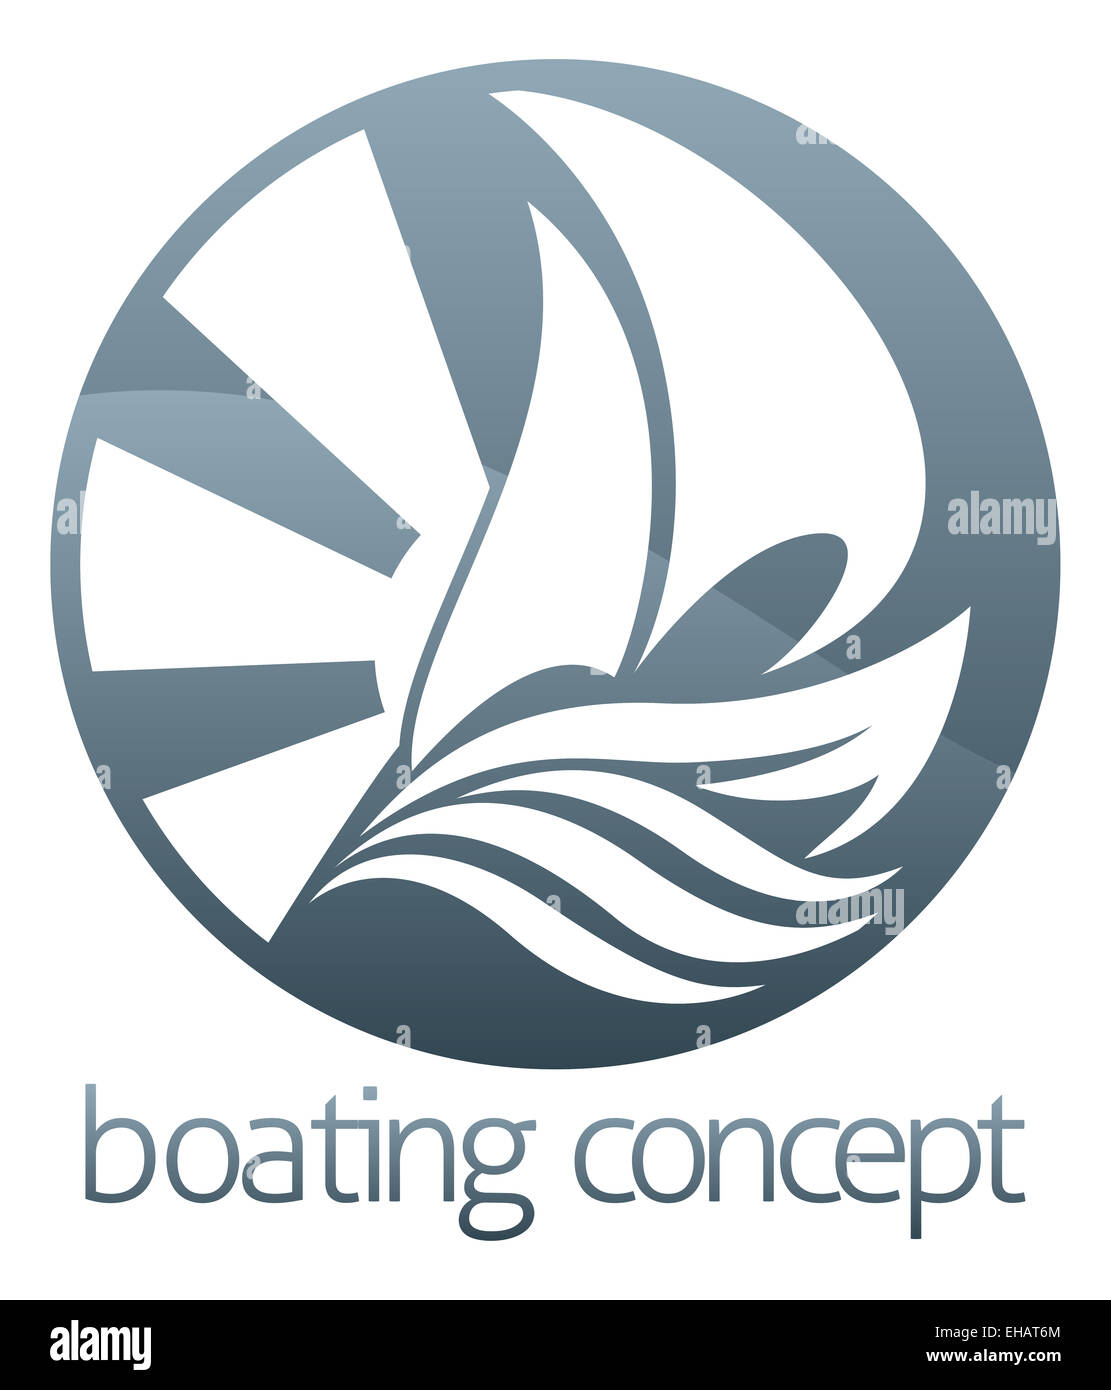 Un résumé de l'illustration un voilier bateau circle concept design Banque D'Images